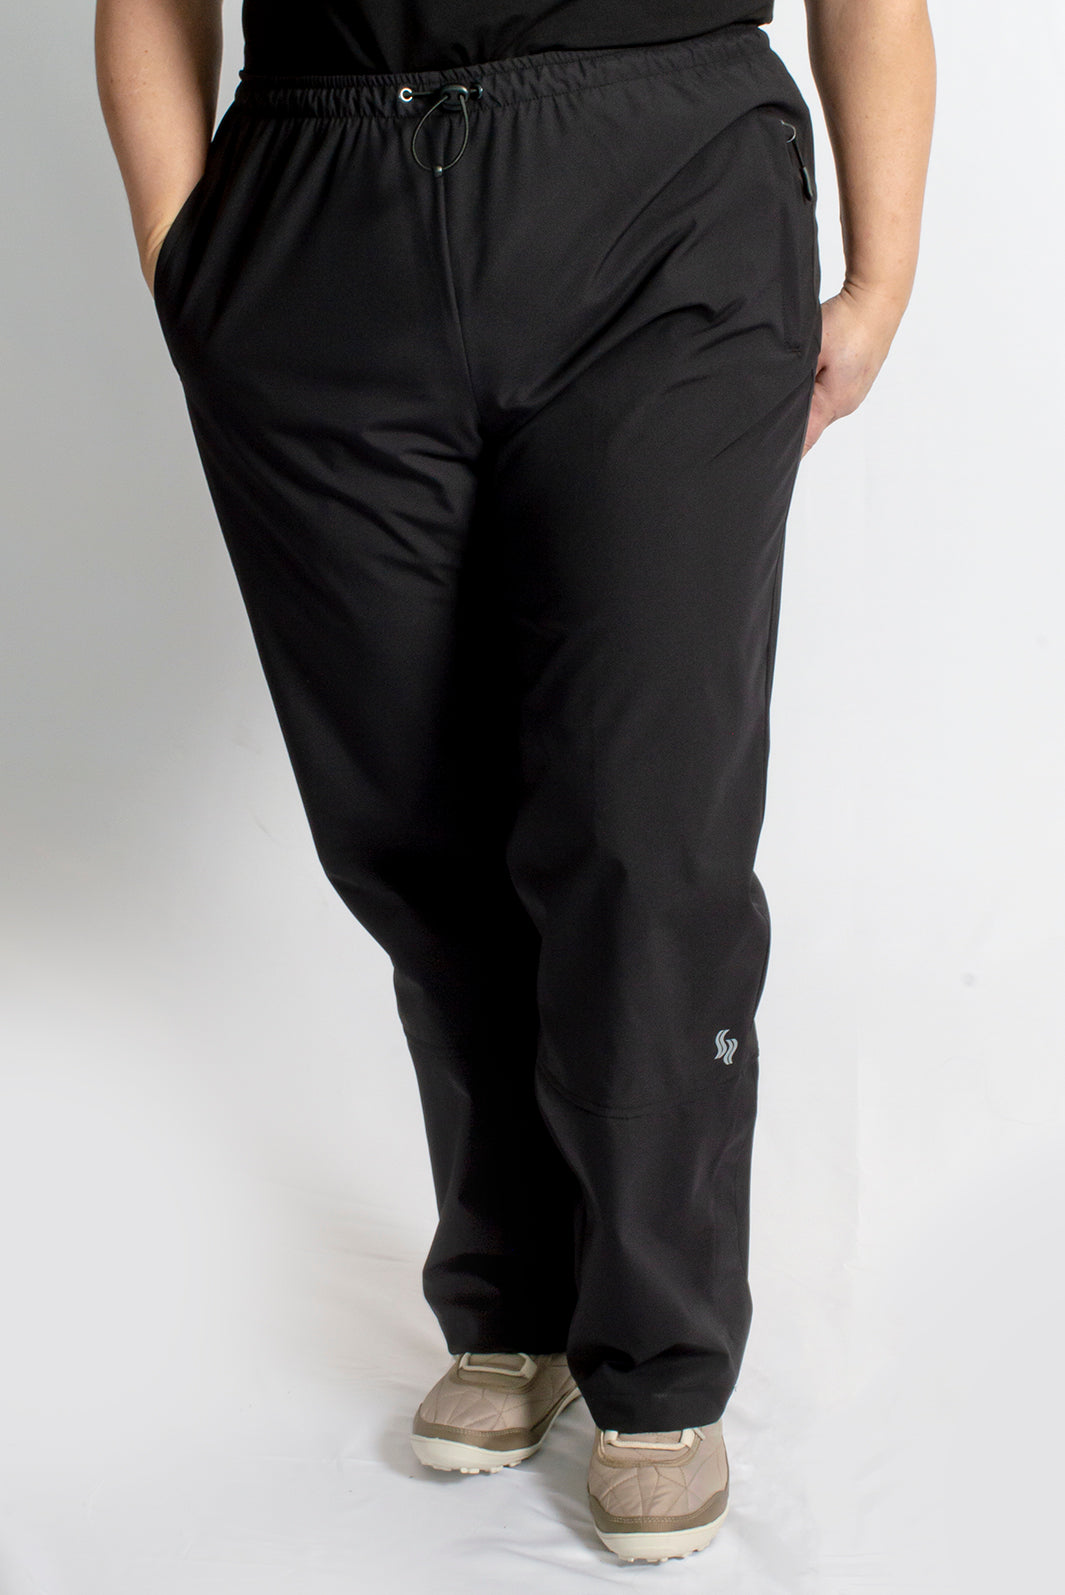 Pantalon de pluie Taille Plus Azimut II de Sportive Plus